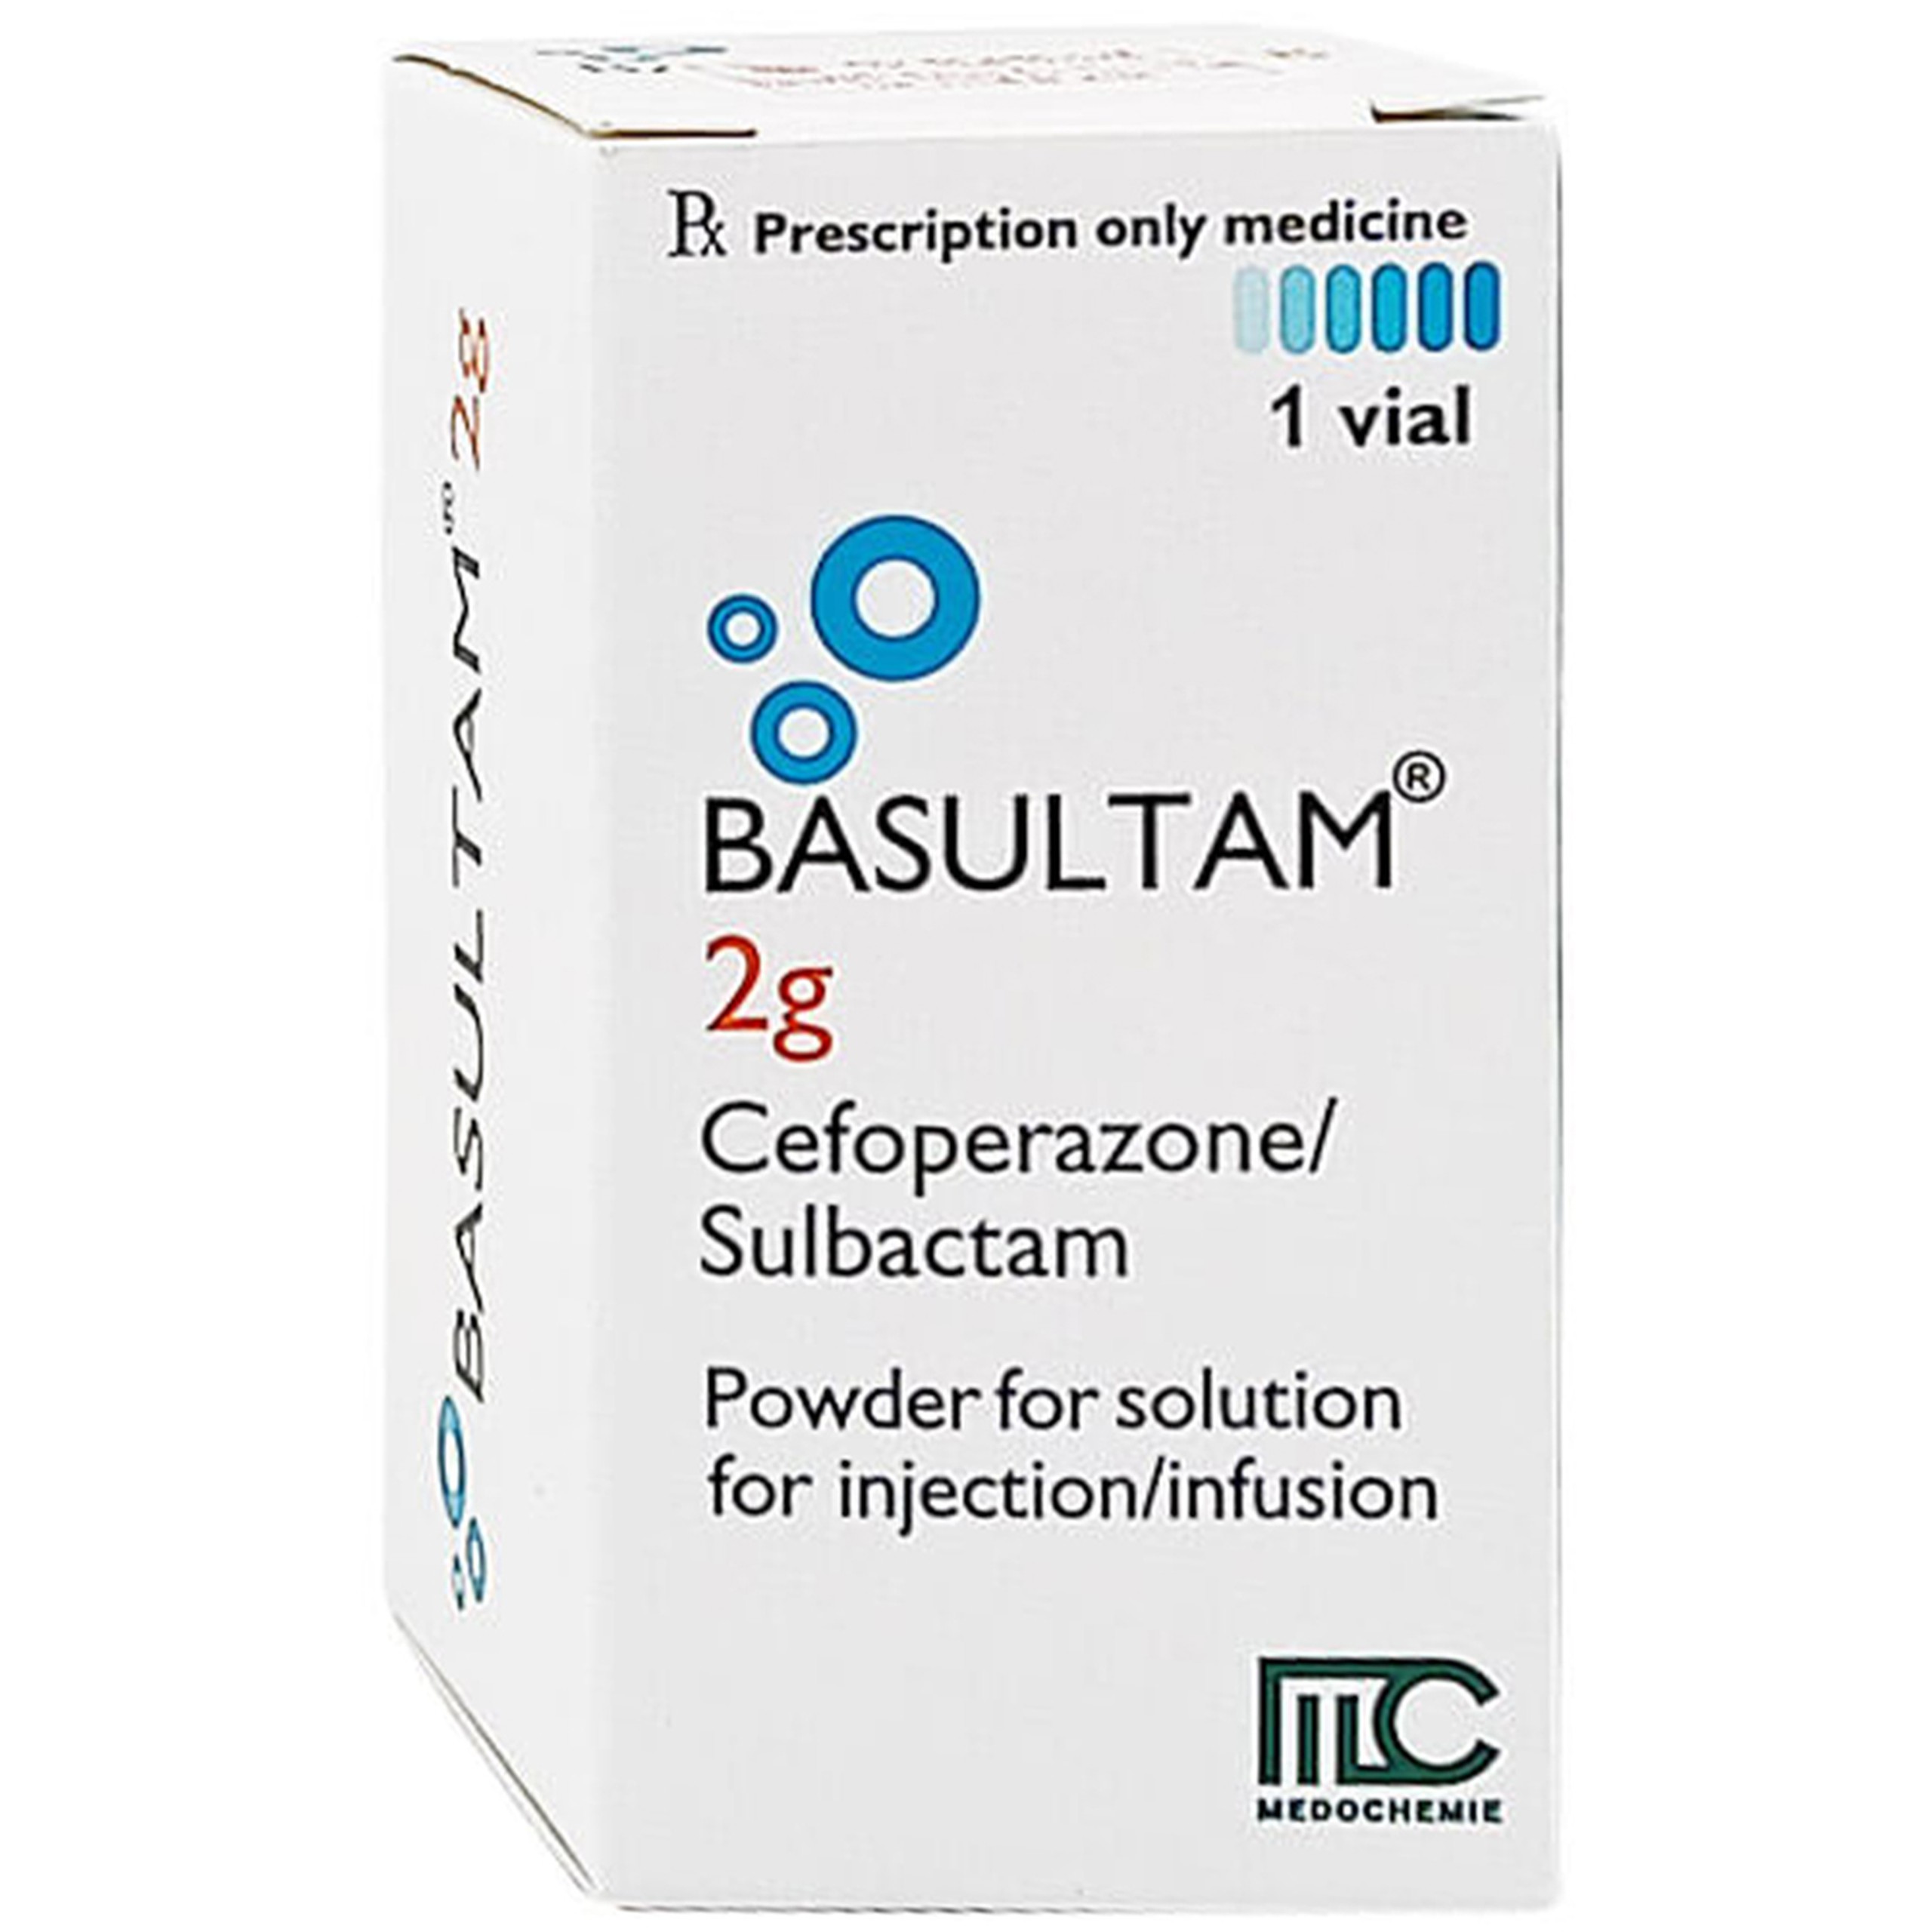 Thuốc Basultam 2g Medochemie điều trị nhiễm khuẩn do những vi khuẩn nhạy cảm